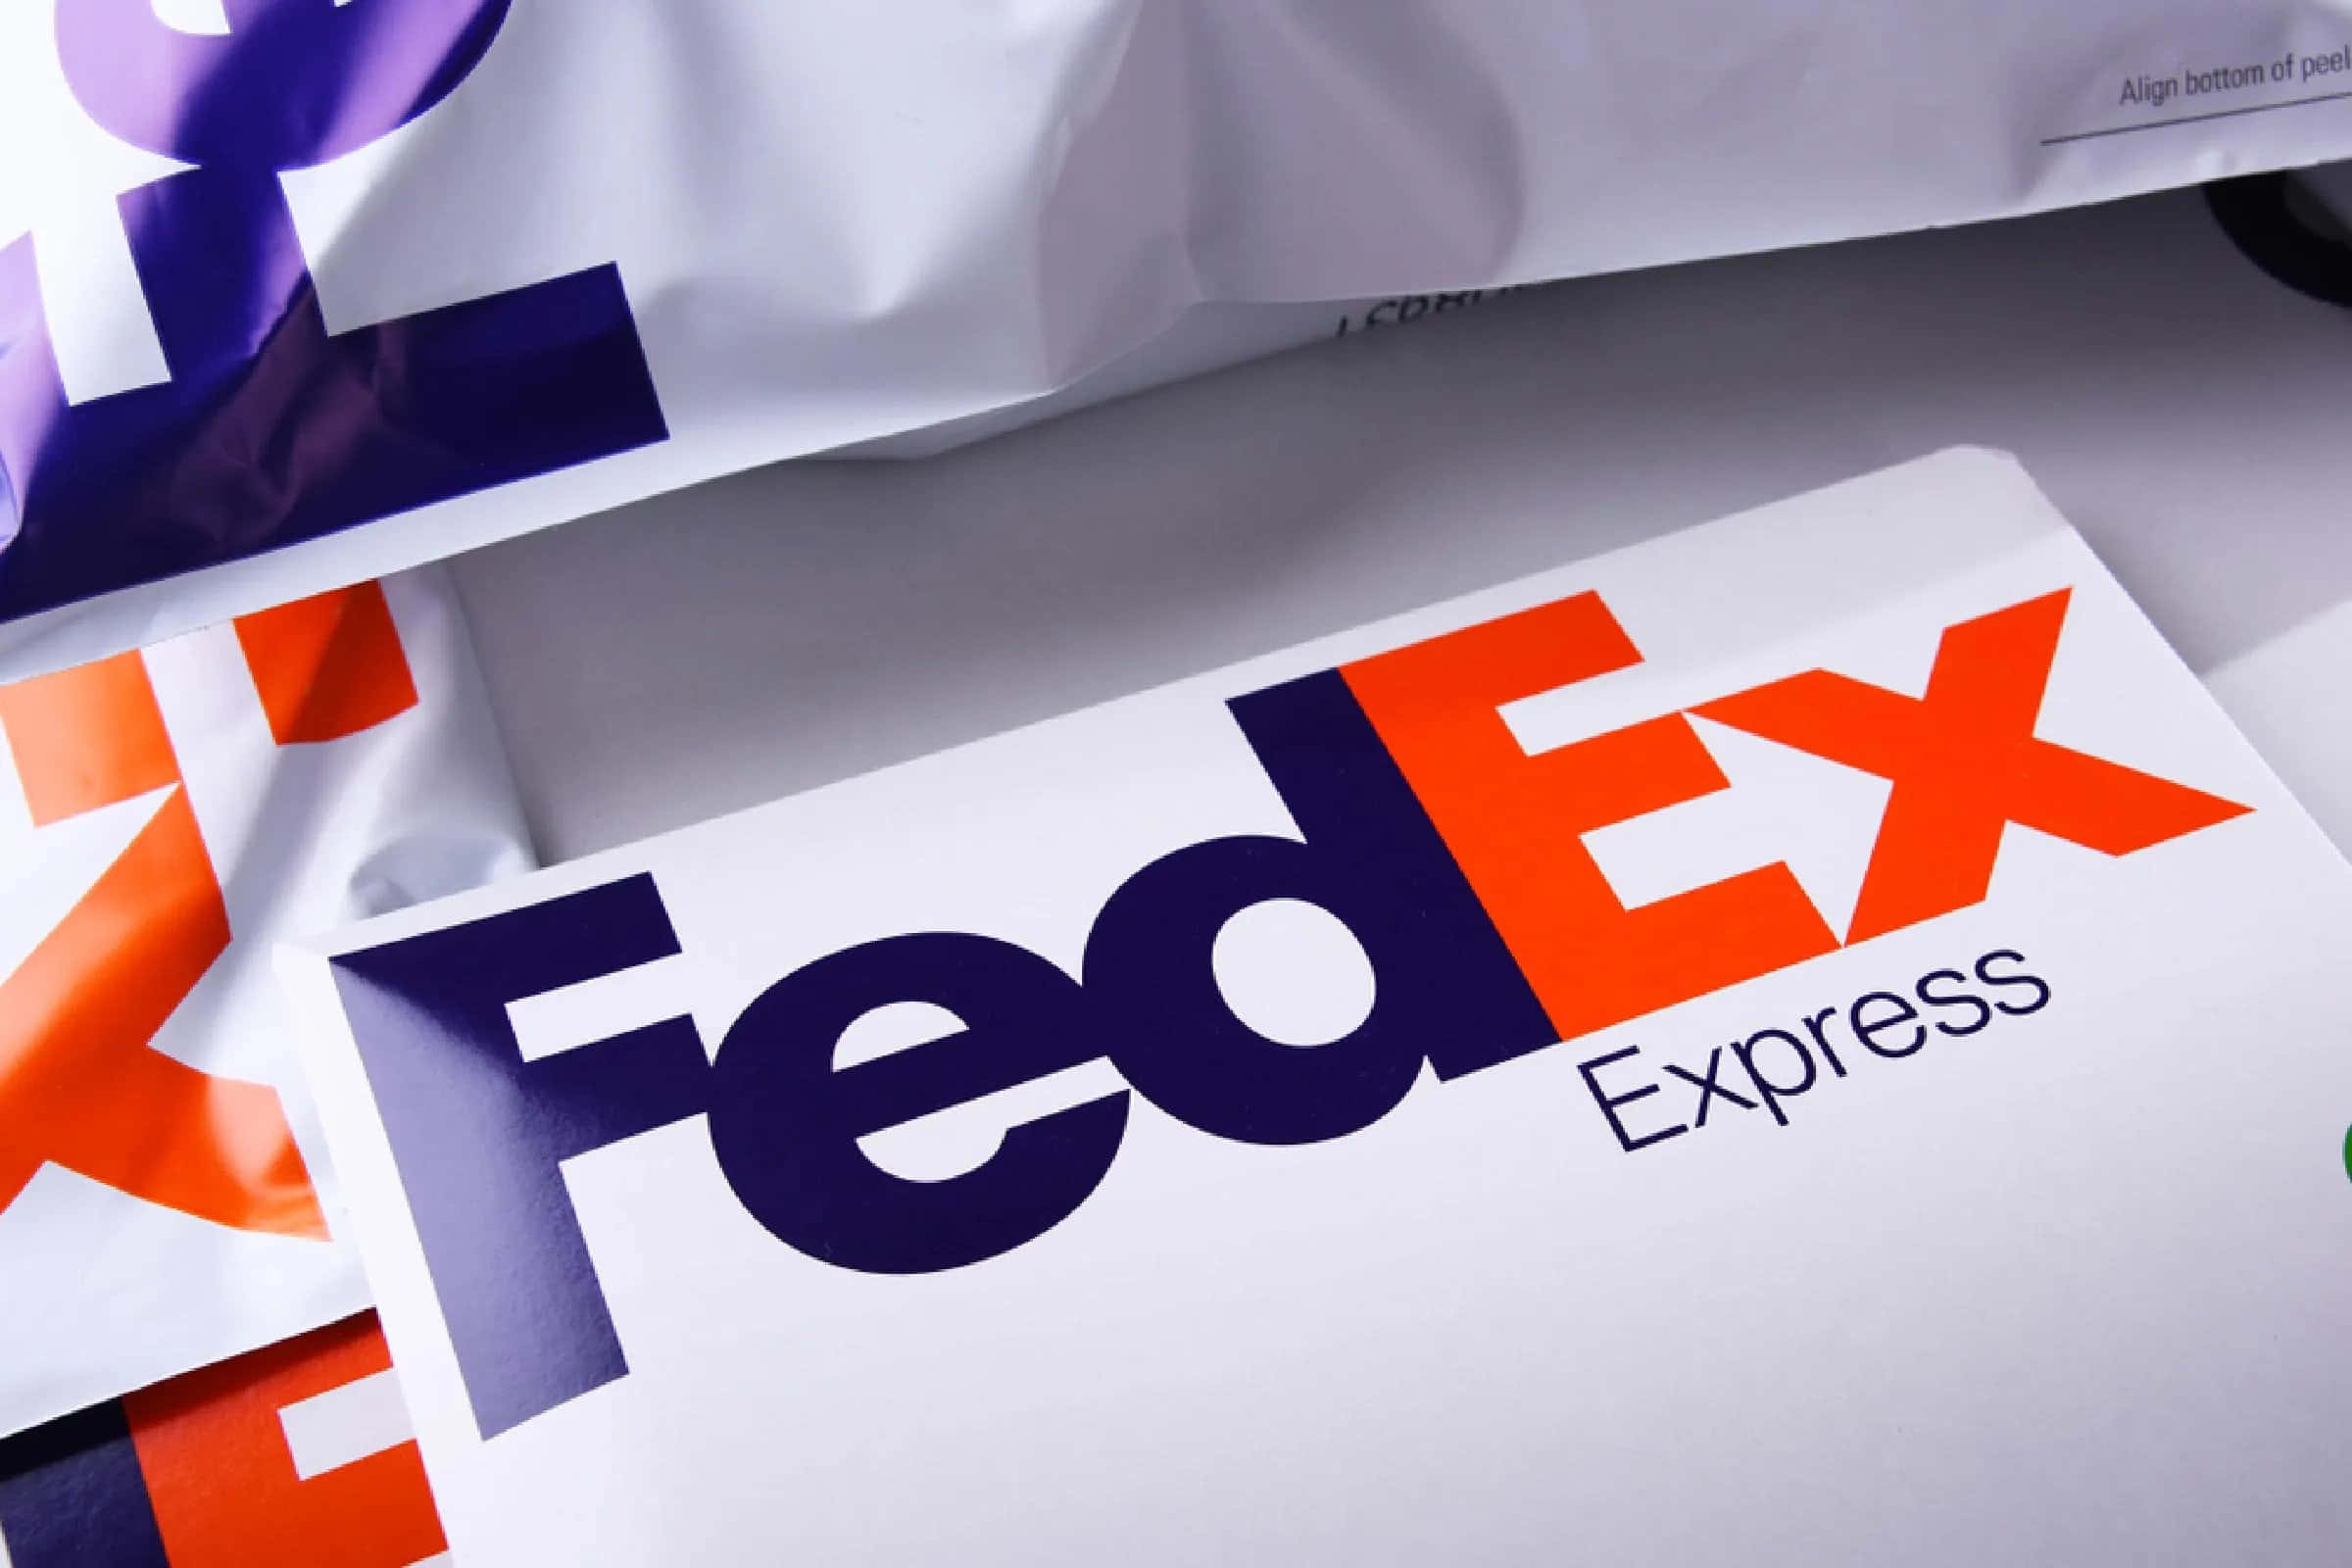 Fedex Express Logos On A White Background